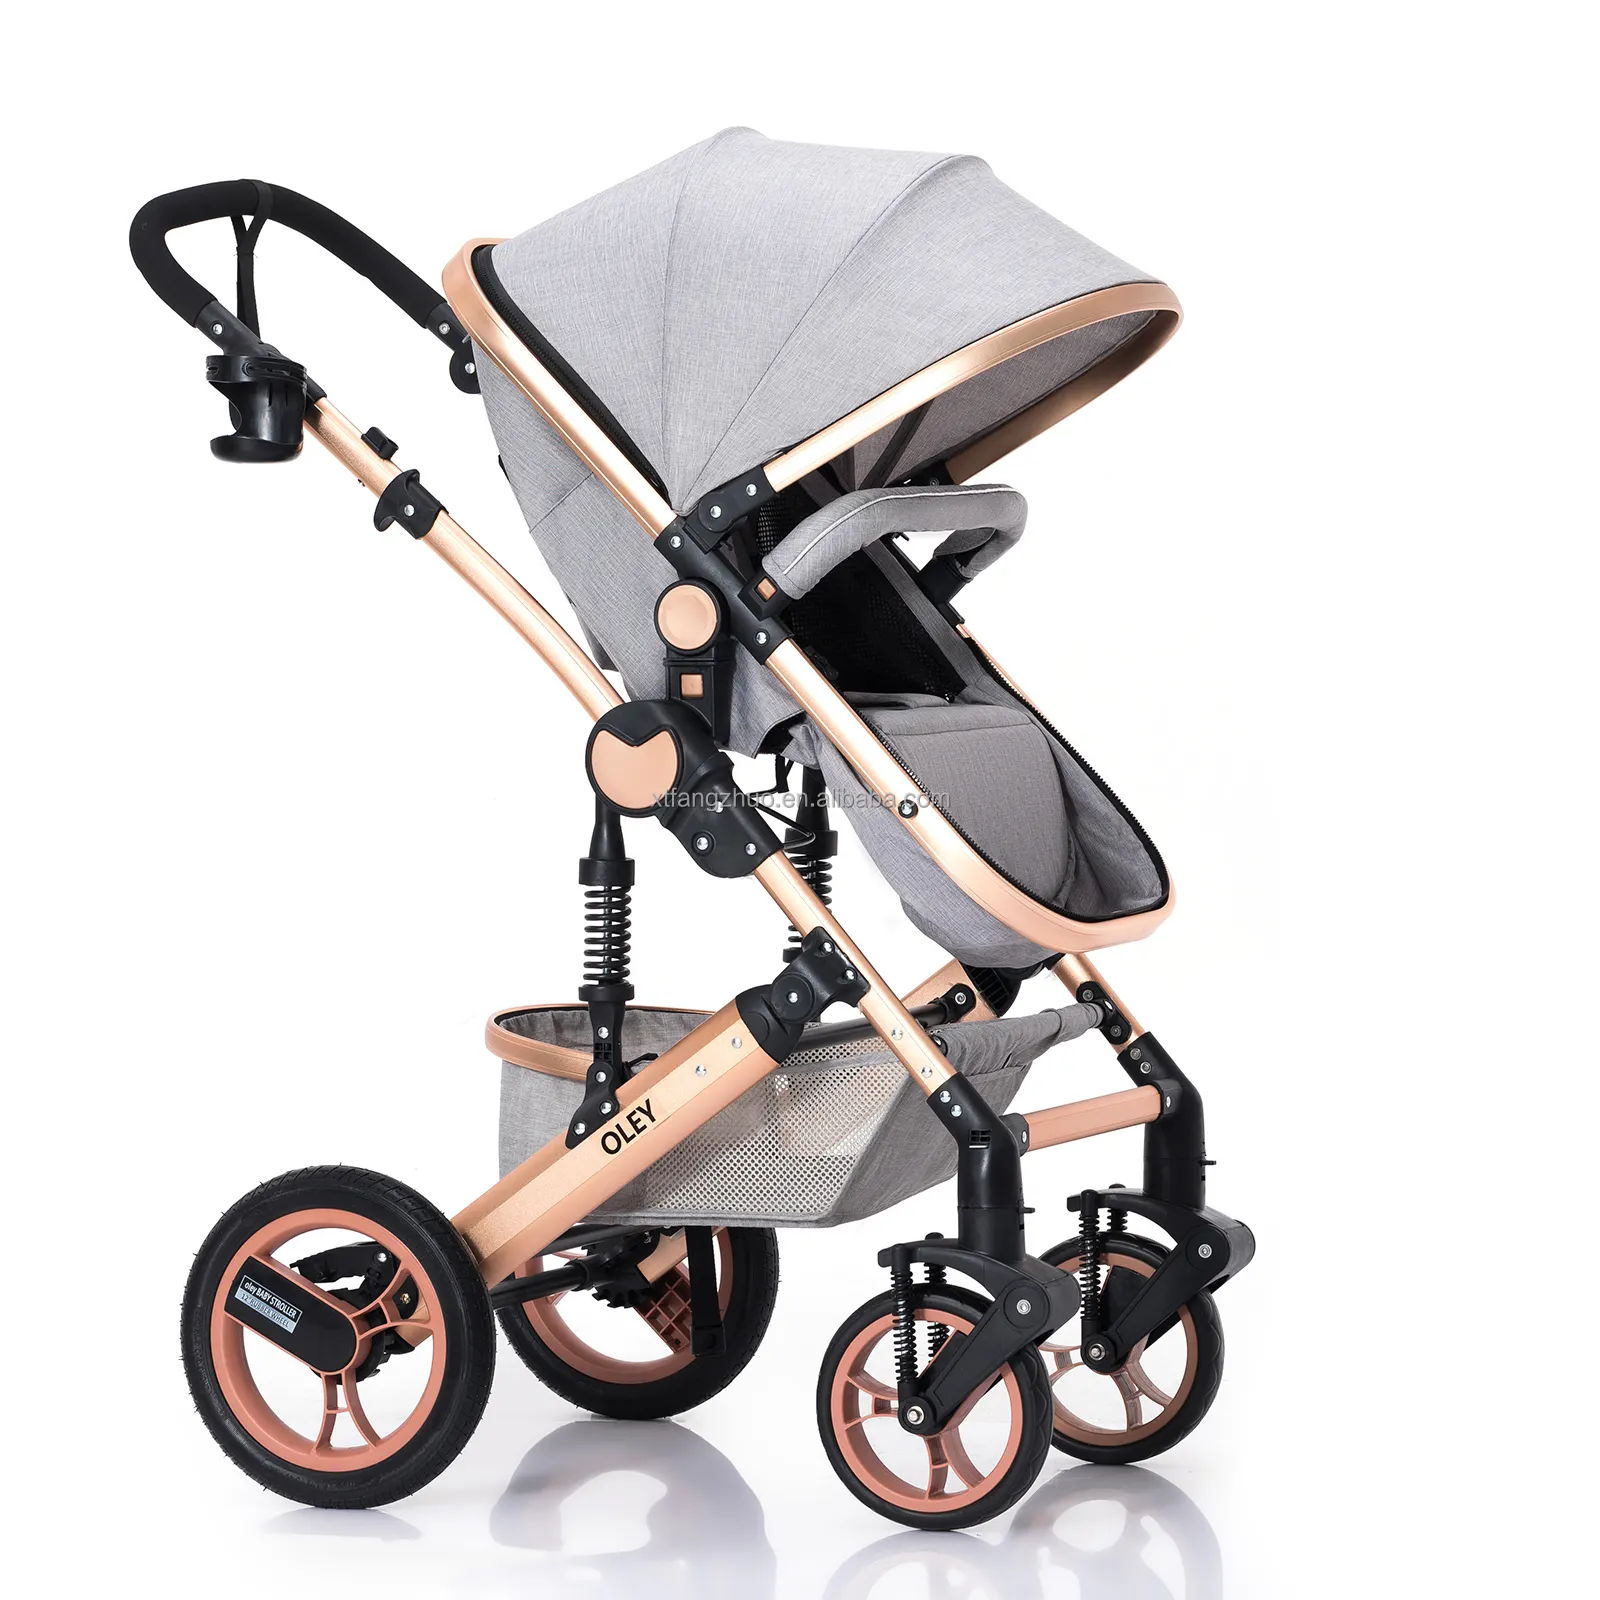 Hot Koop 3 In 1 Kinderwagen Voor Enfant Mama/Baby Items Lijst Kinderwagen Met Baby Sling/Baby trolley Voor Verkoop